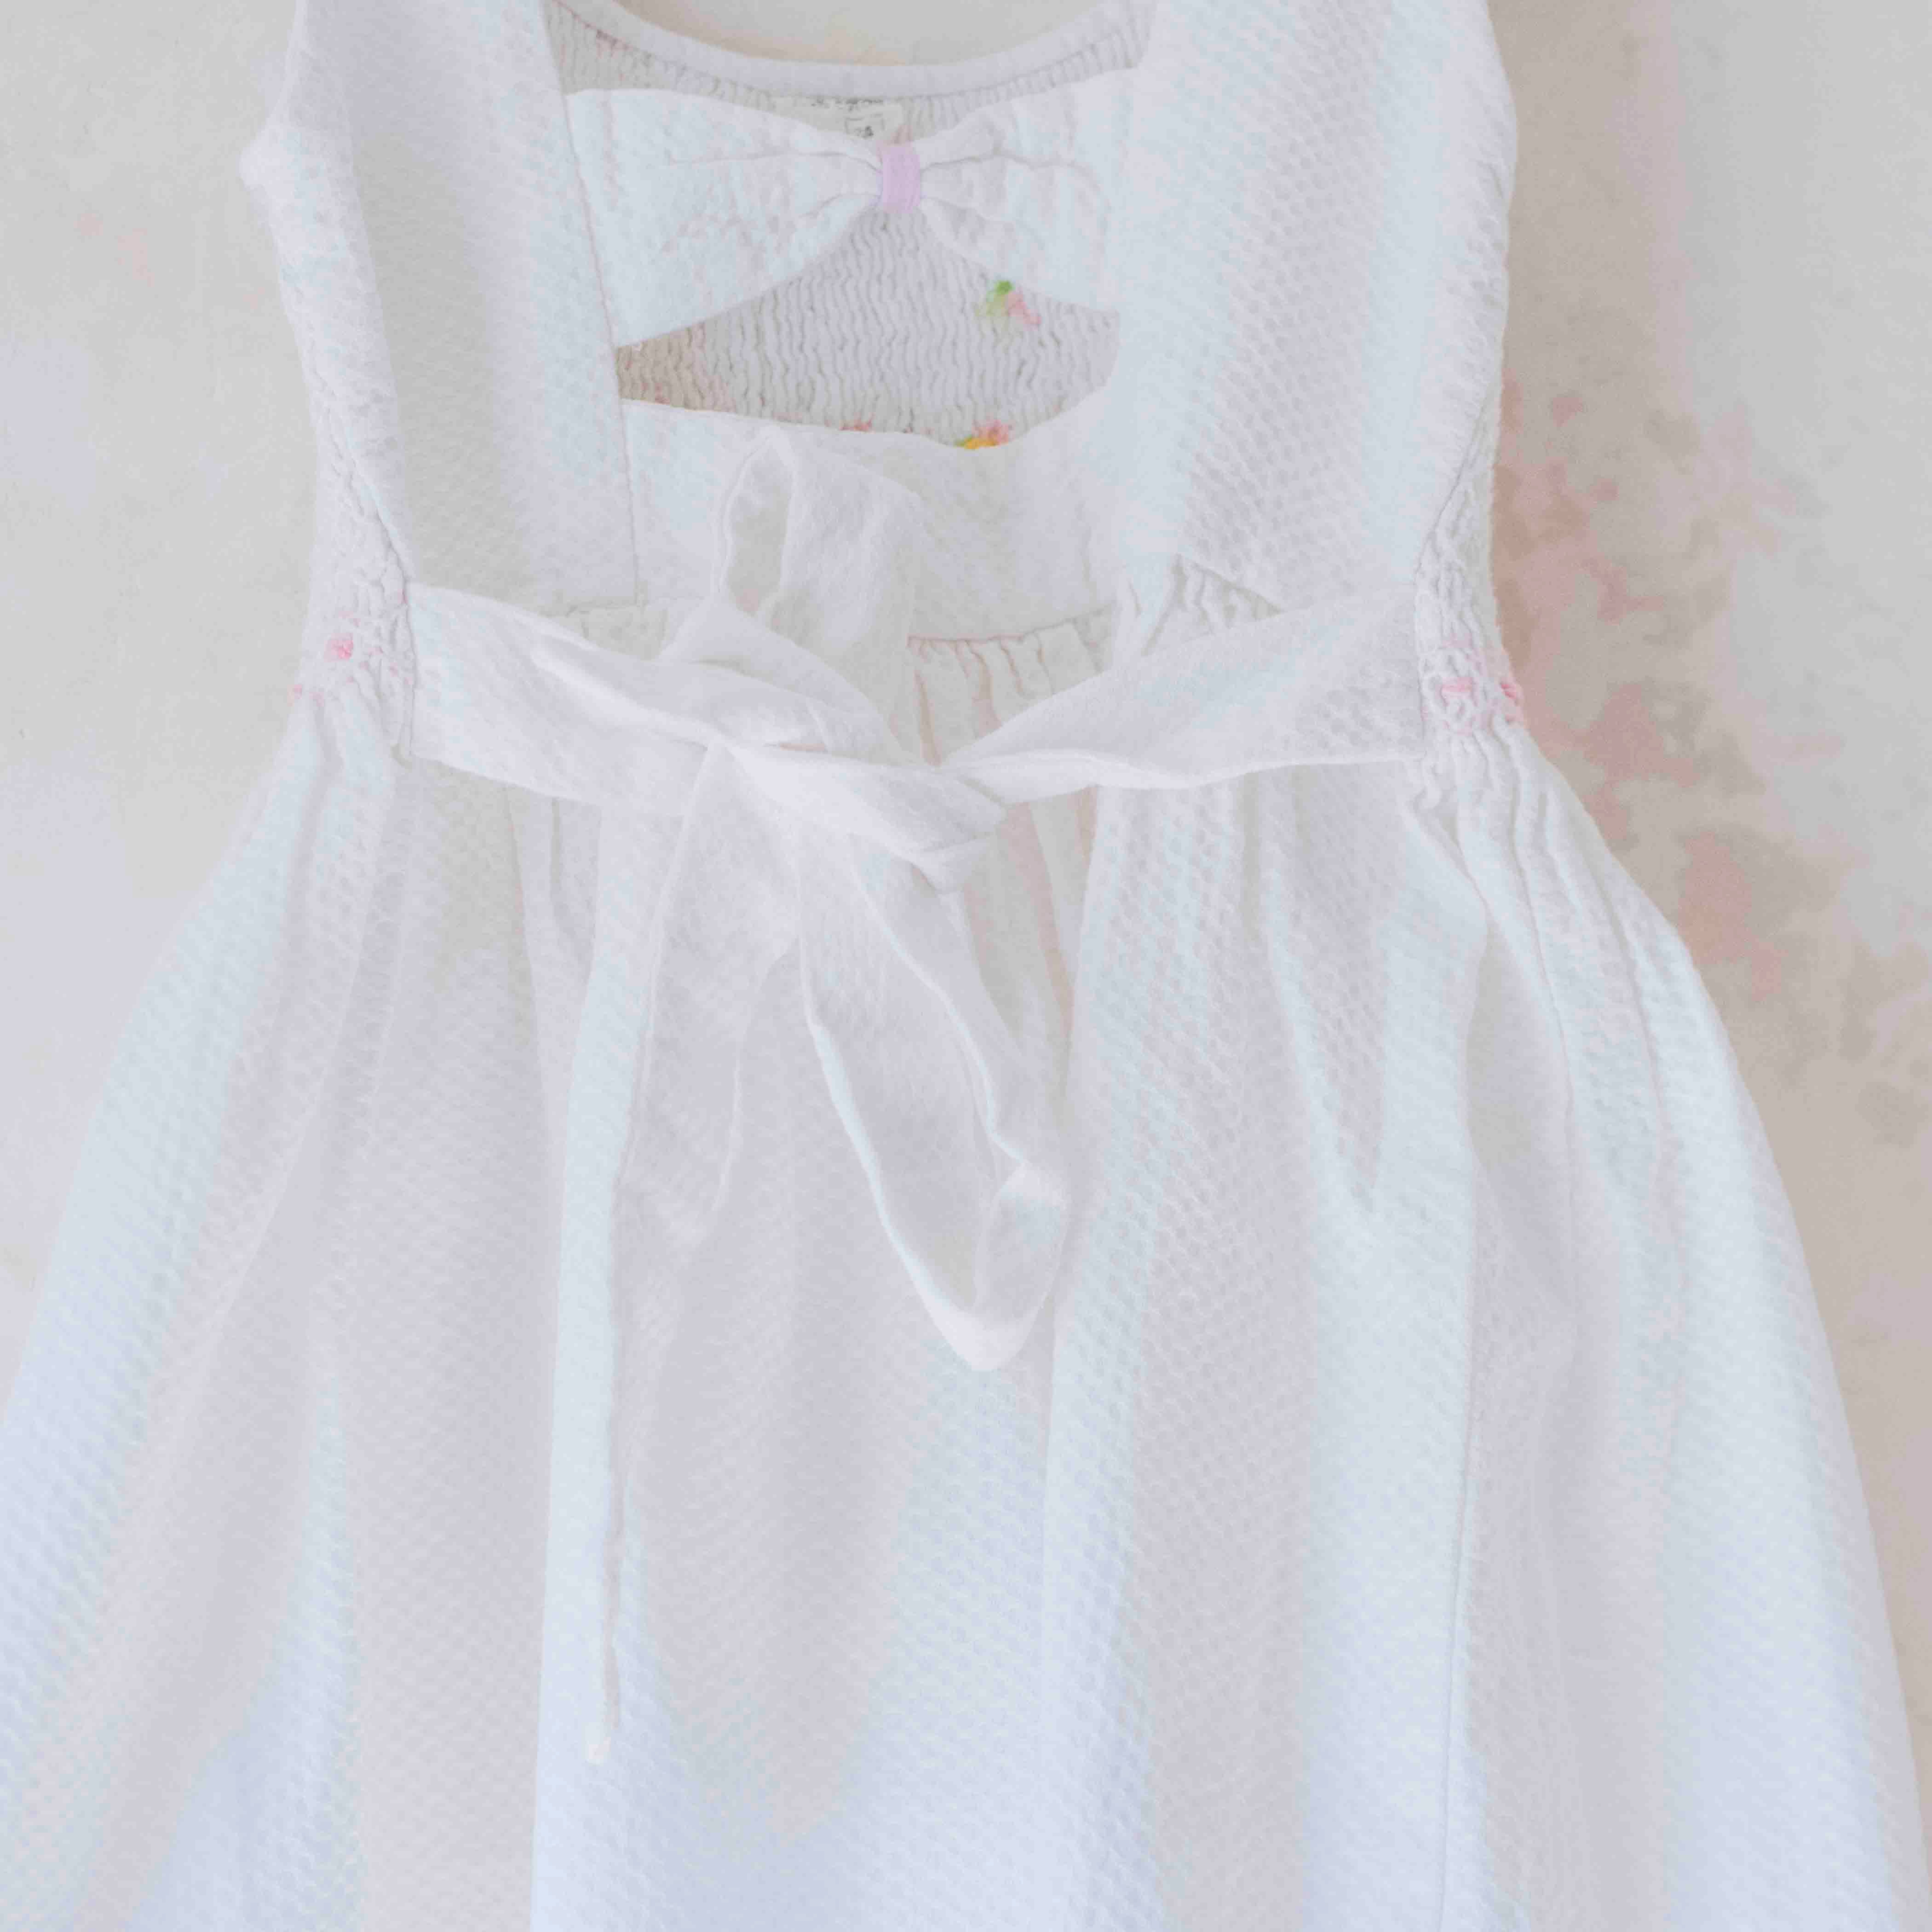 שמלה לבנה עם פרחים רקומים ואיקס בגב | 2-3 שנים